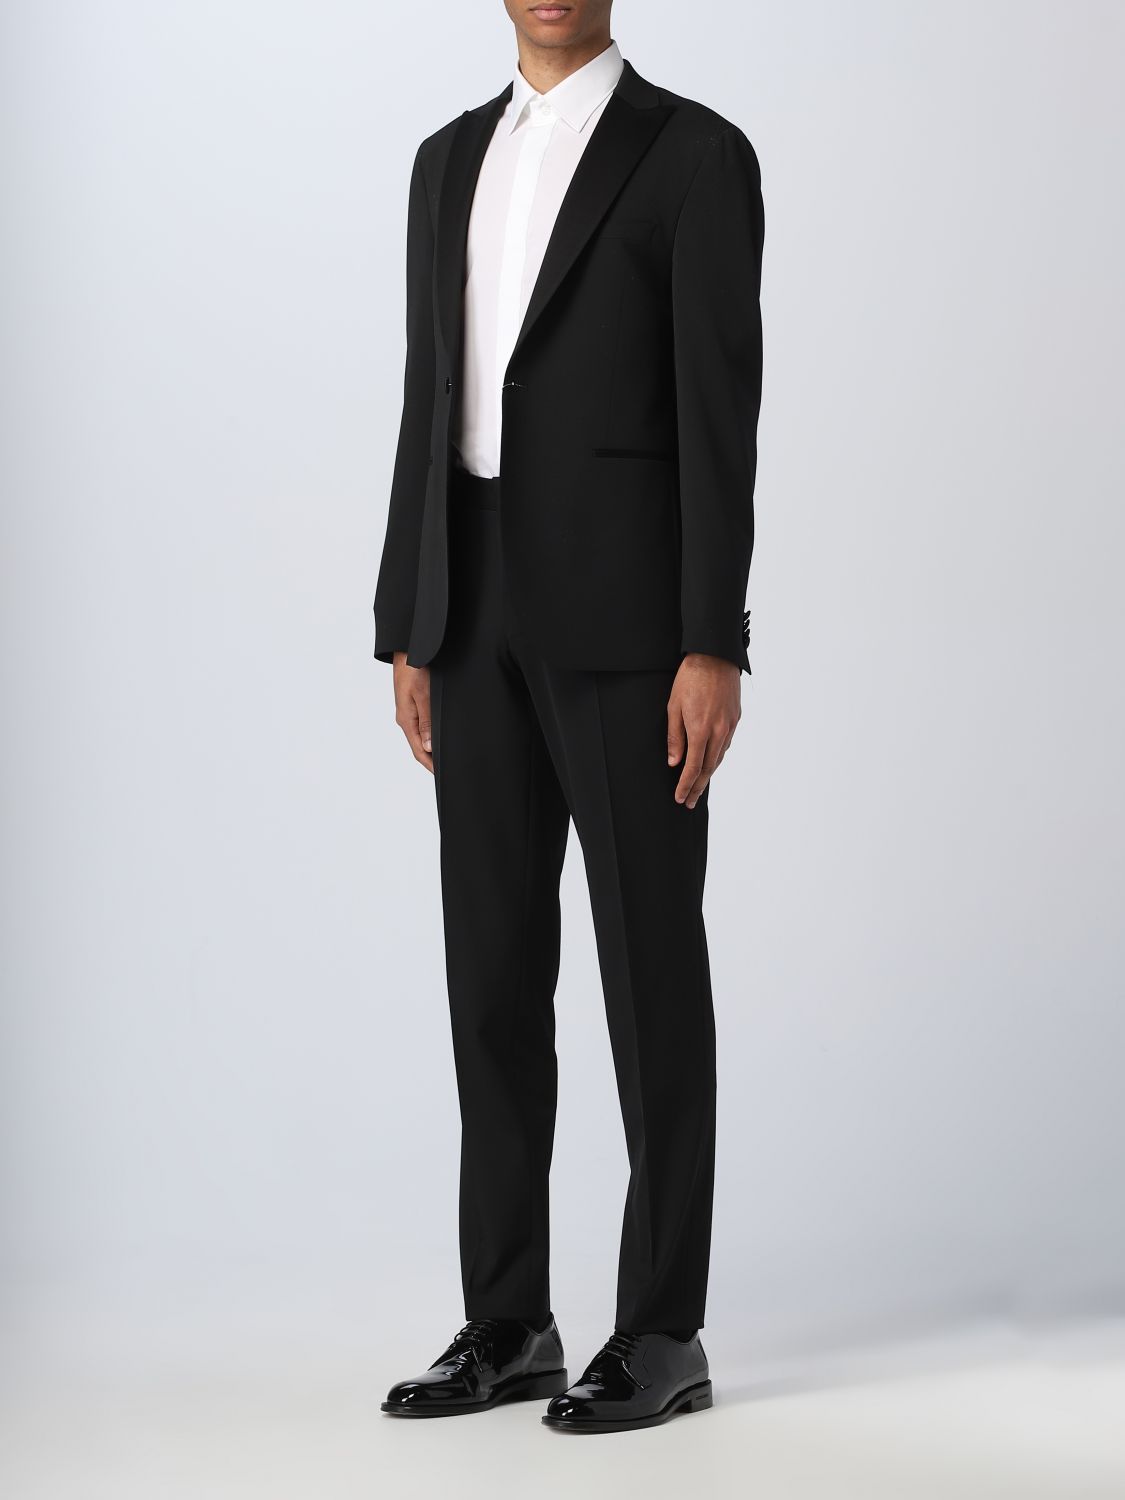 MICHAEL KORS: suit for man - Black | Michael Kors suit MK0ST01031 online on  